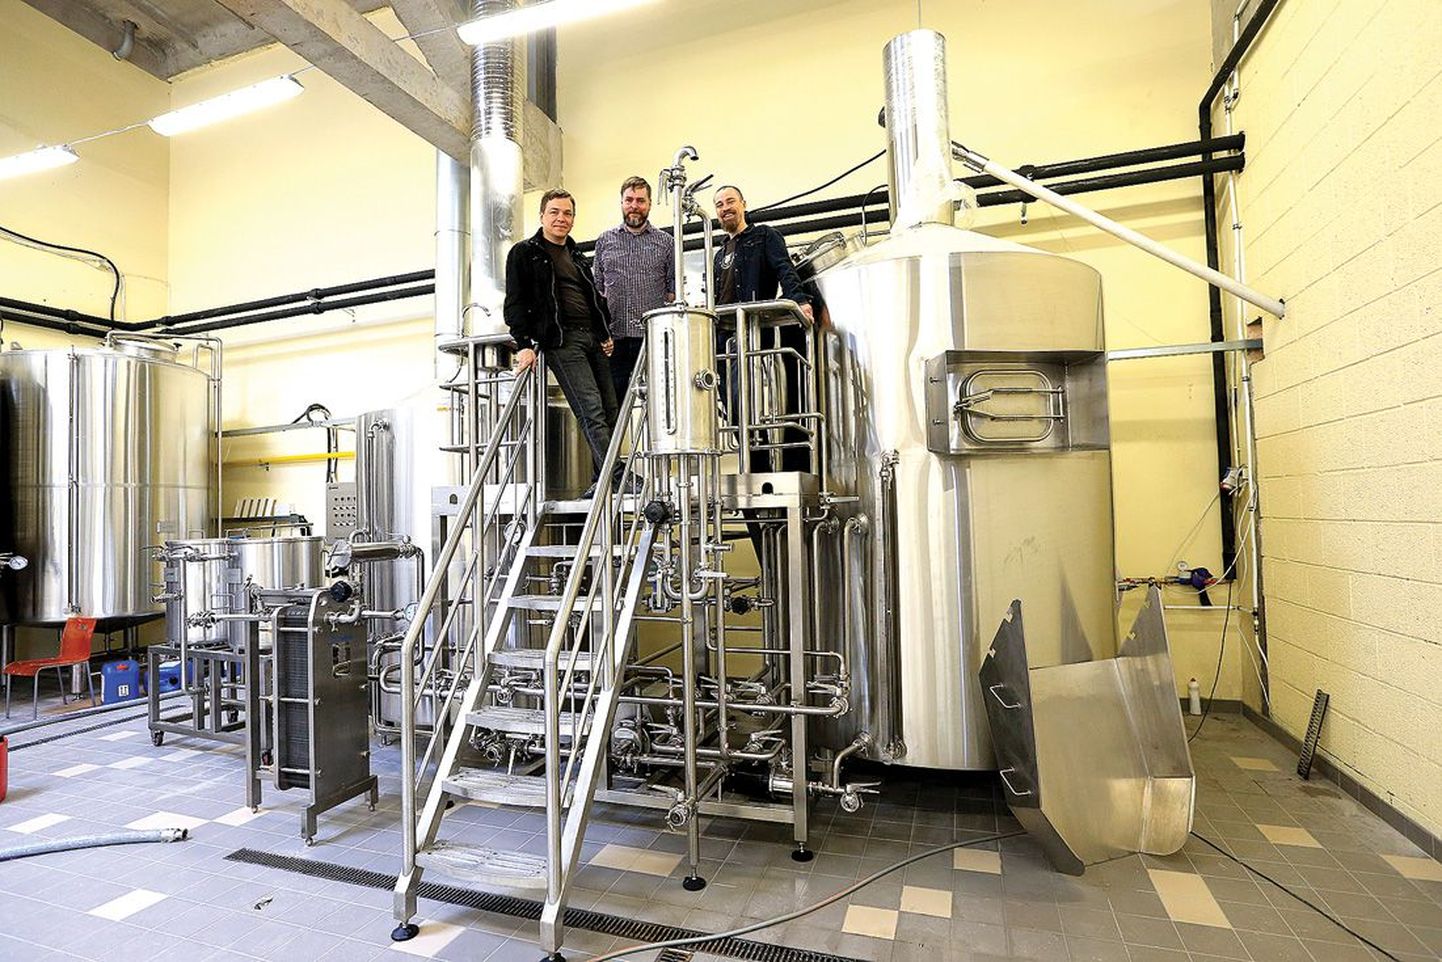 Uue tehase omanikud Üllar Kaljurand (vasakult), Lauri Eidermann ja Eero Mander ütlevad, et tehas suudab esialgu valmistada 10 000 liitrit õlut kuus. Tulevikus saab tootmist kasvatada poole võrra.